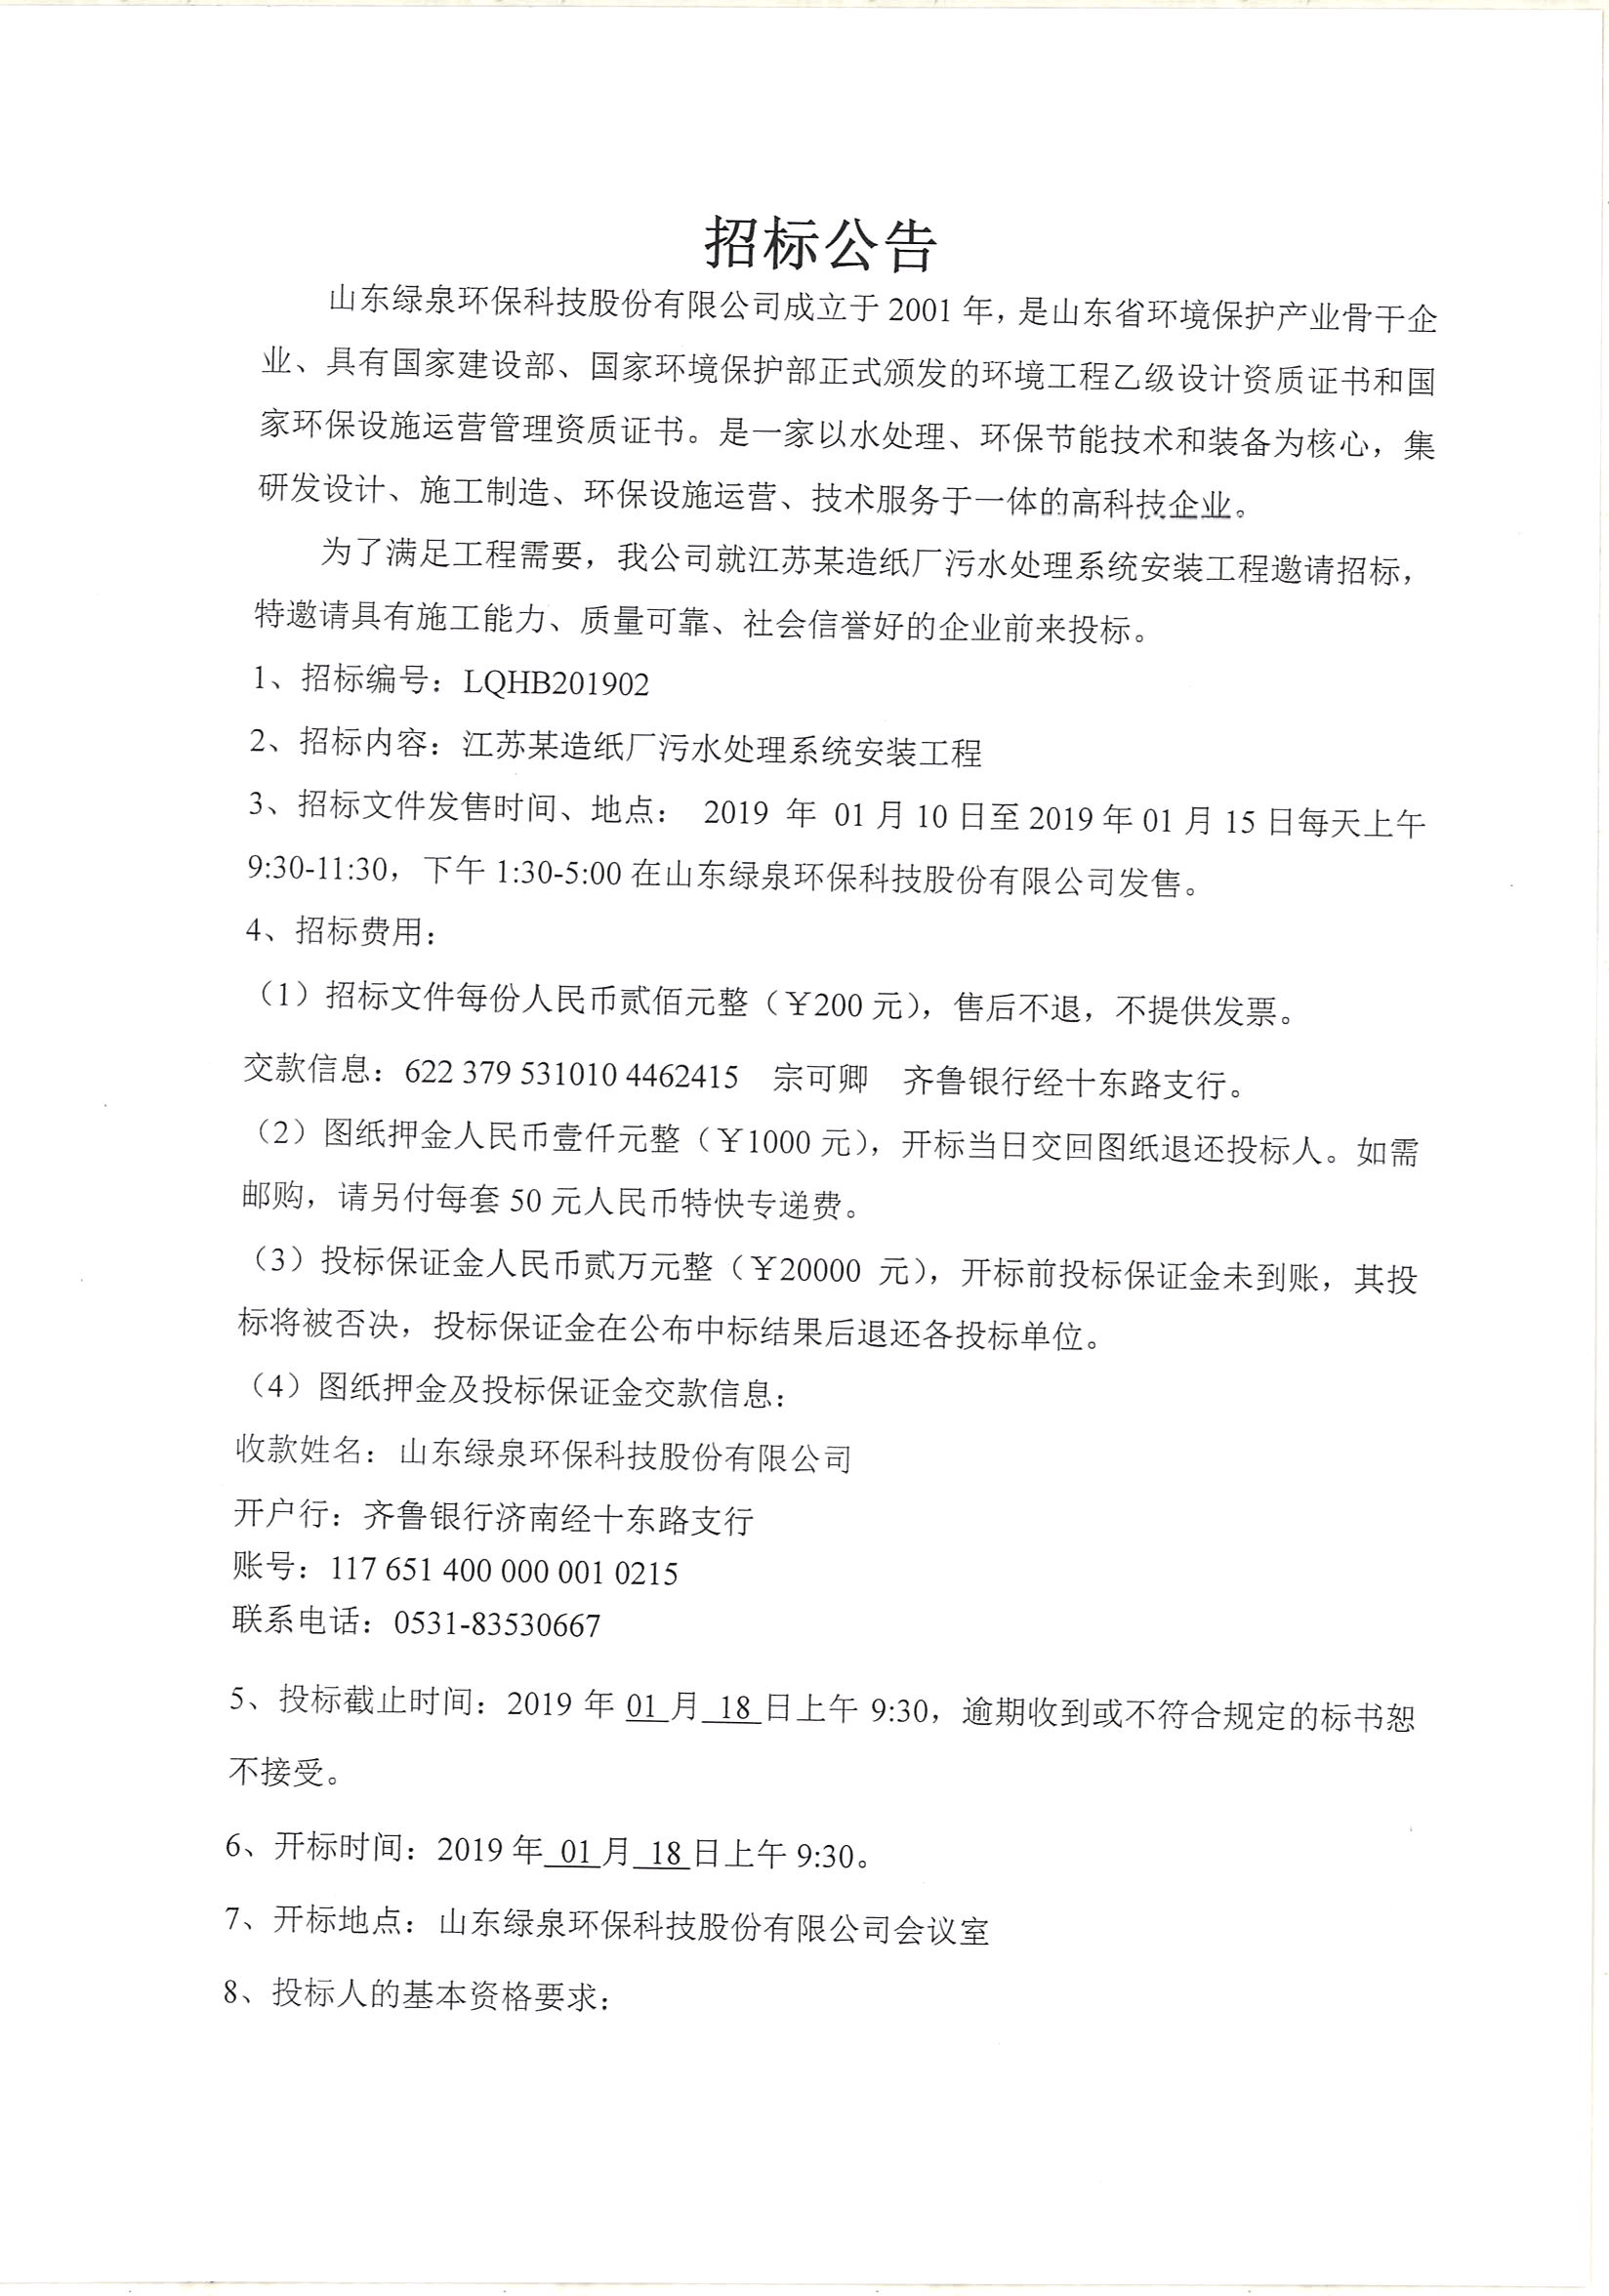 江苏某造纸厂污水处理安装工程招标公告